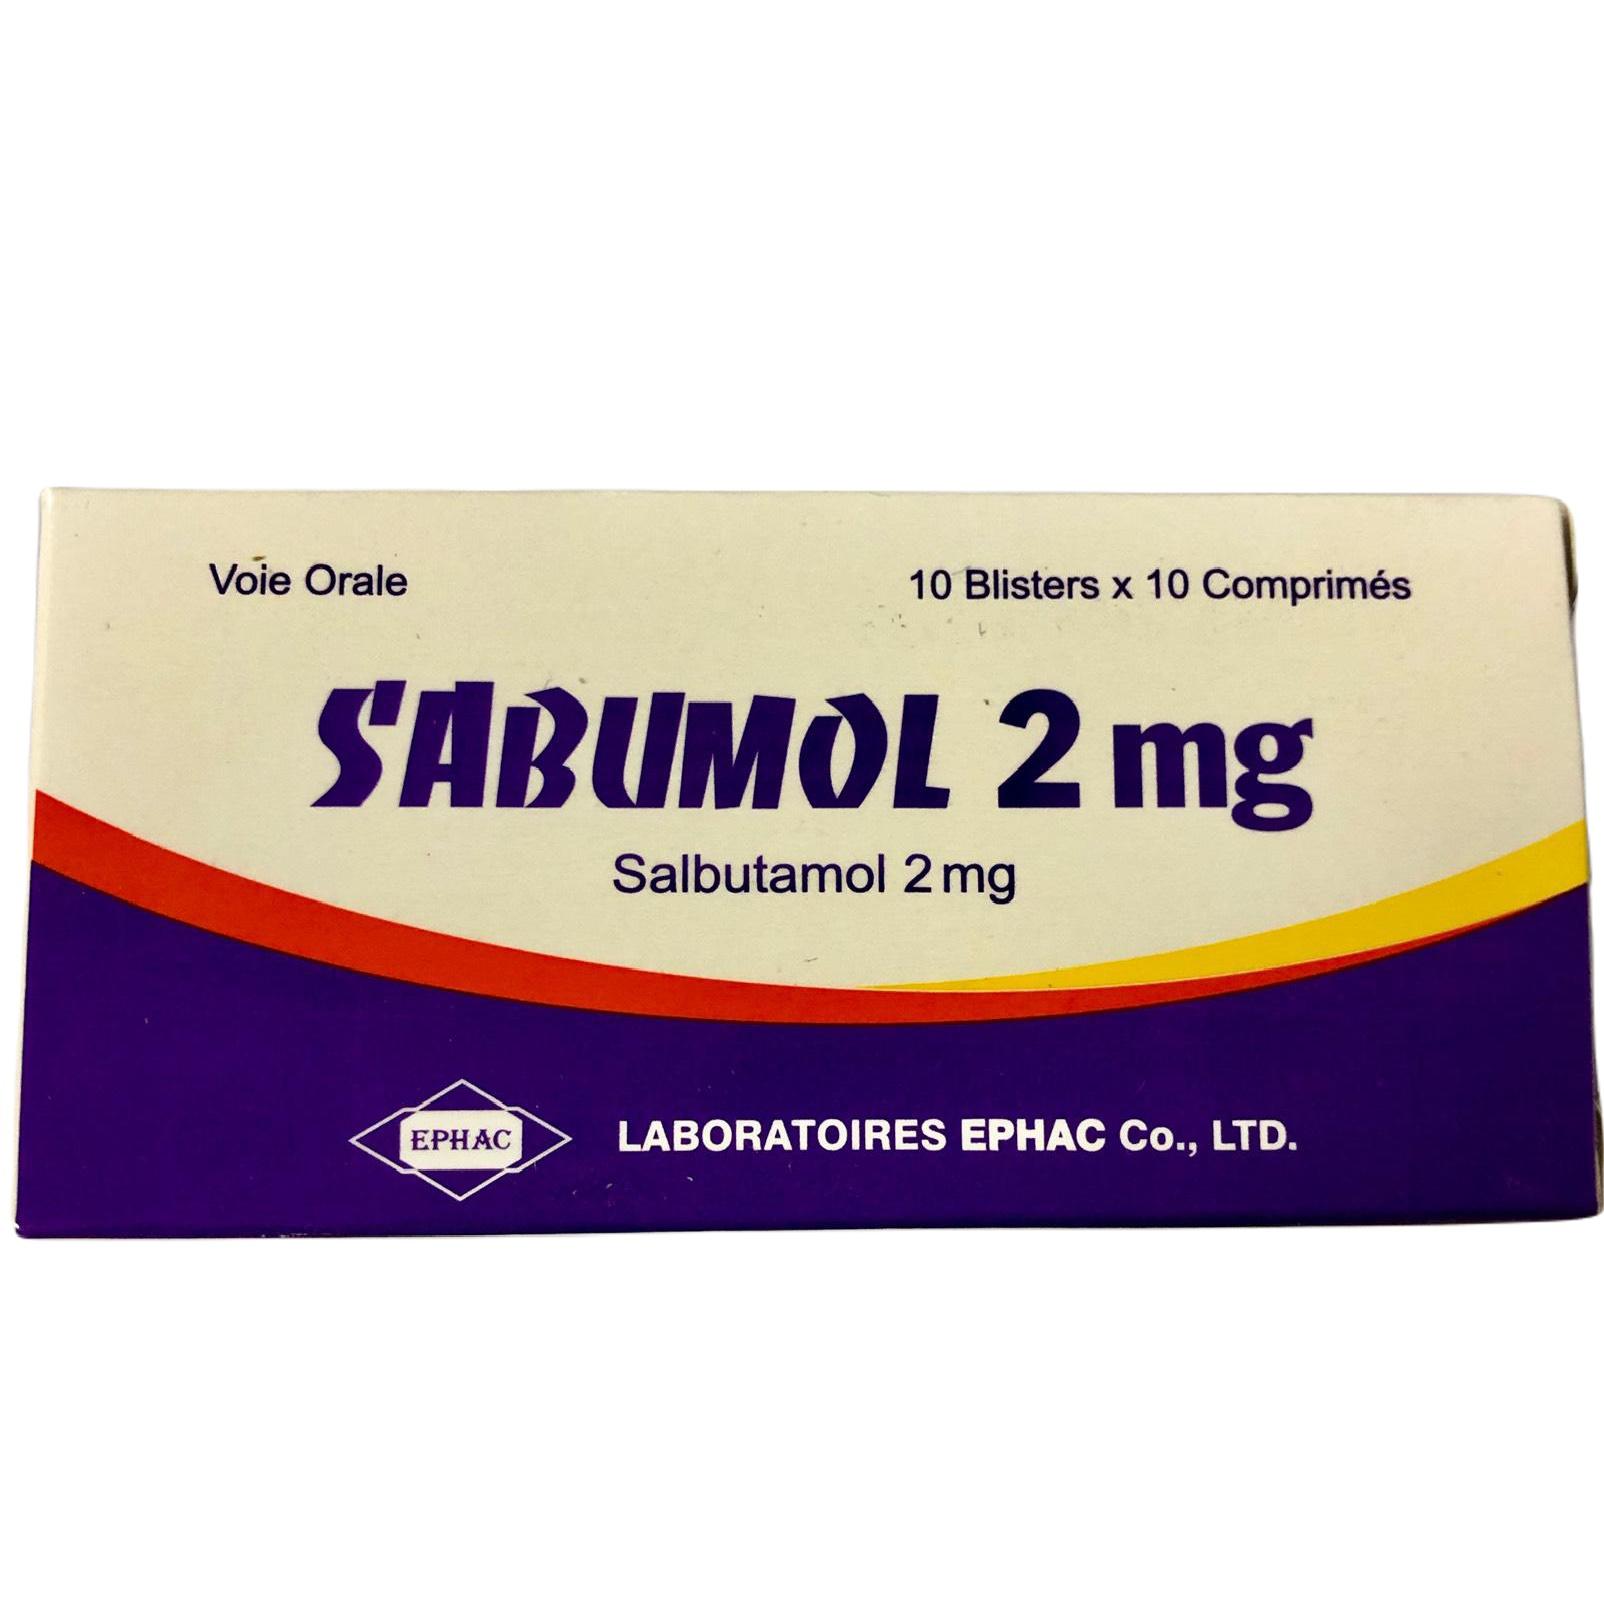 Sabumol 2mg (Salbutamol) Ephac (H/100v)